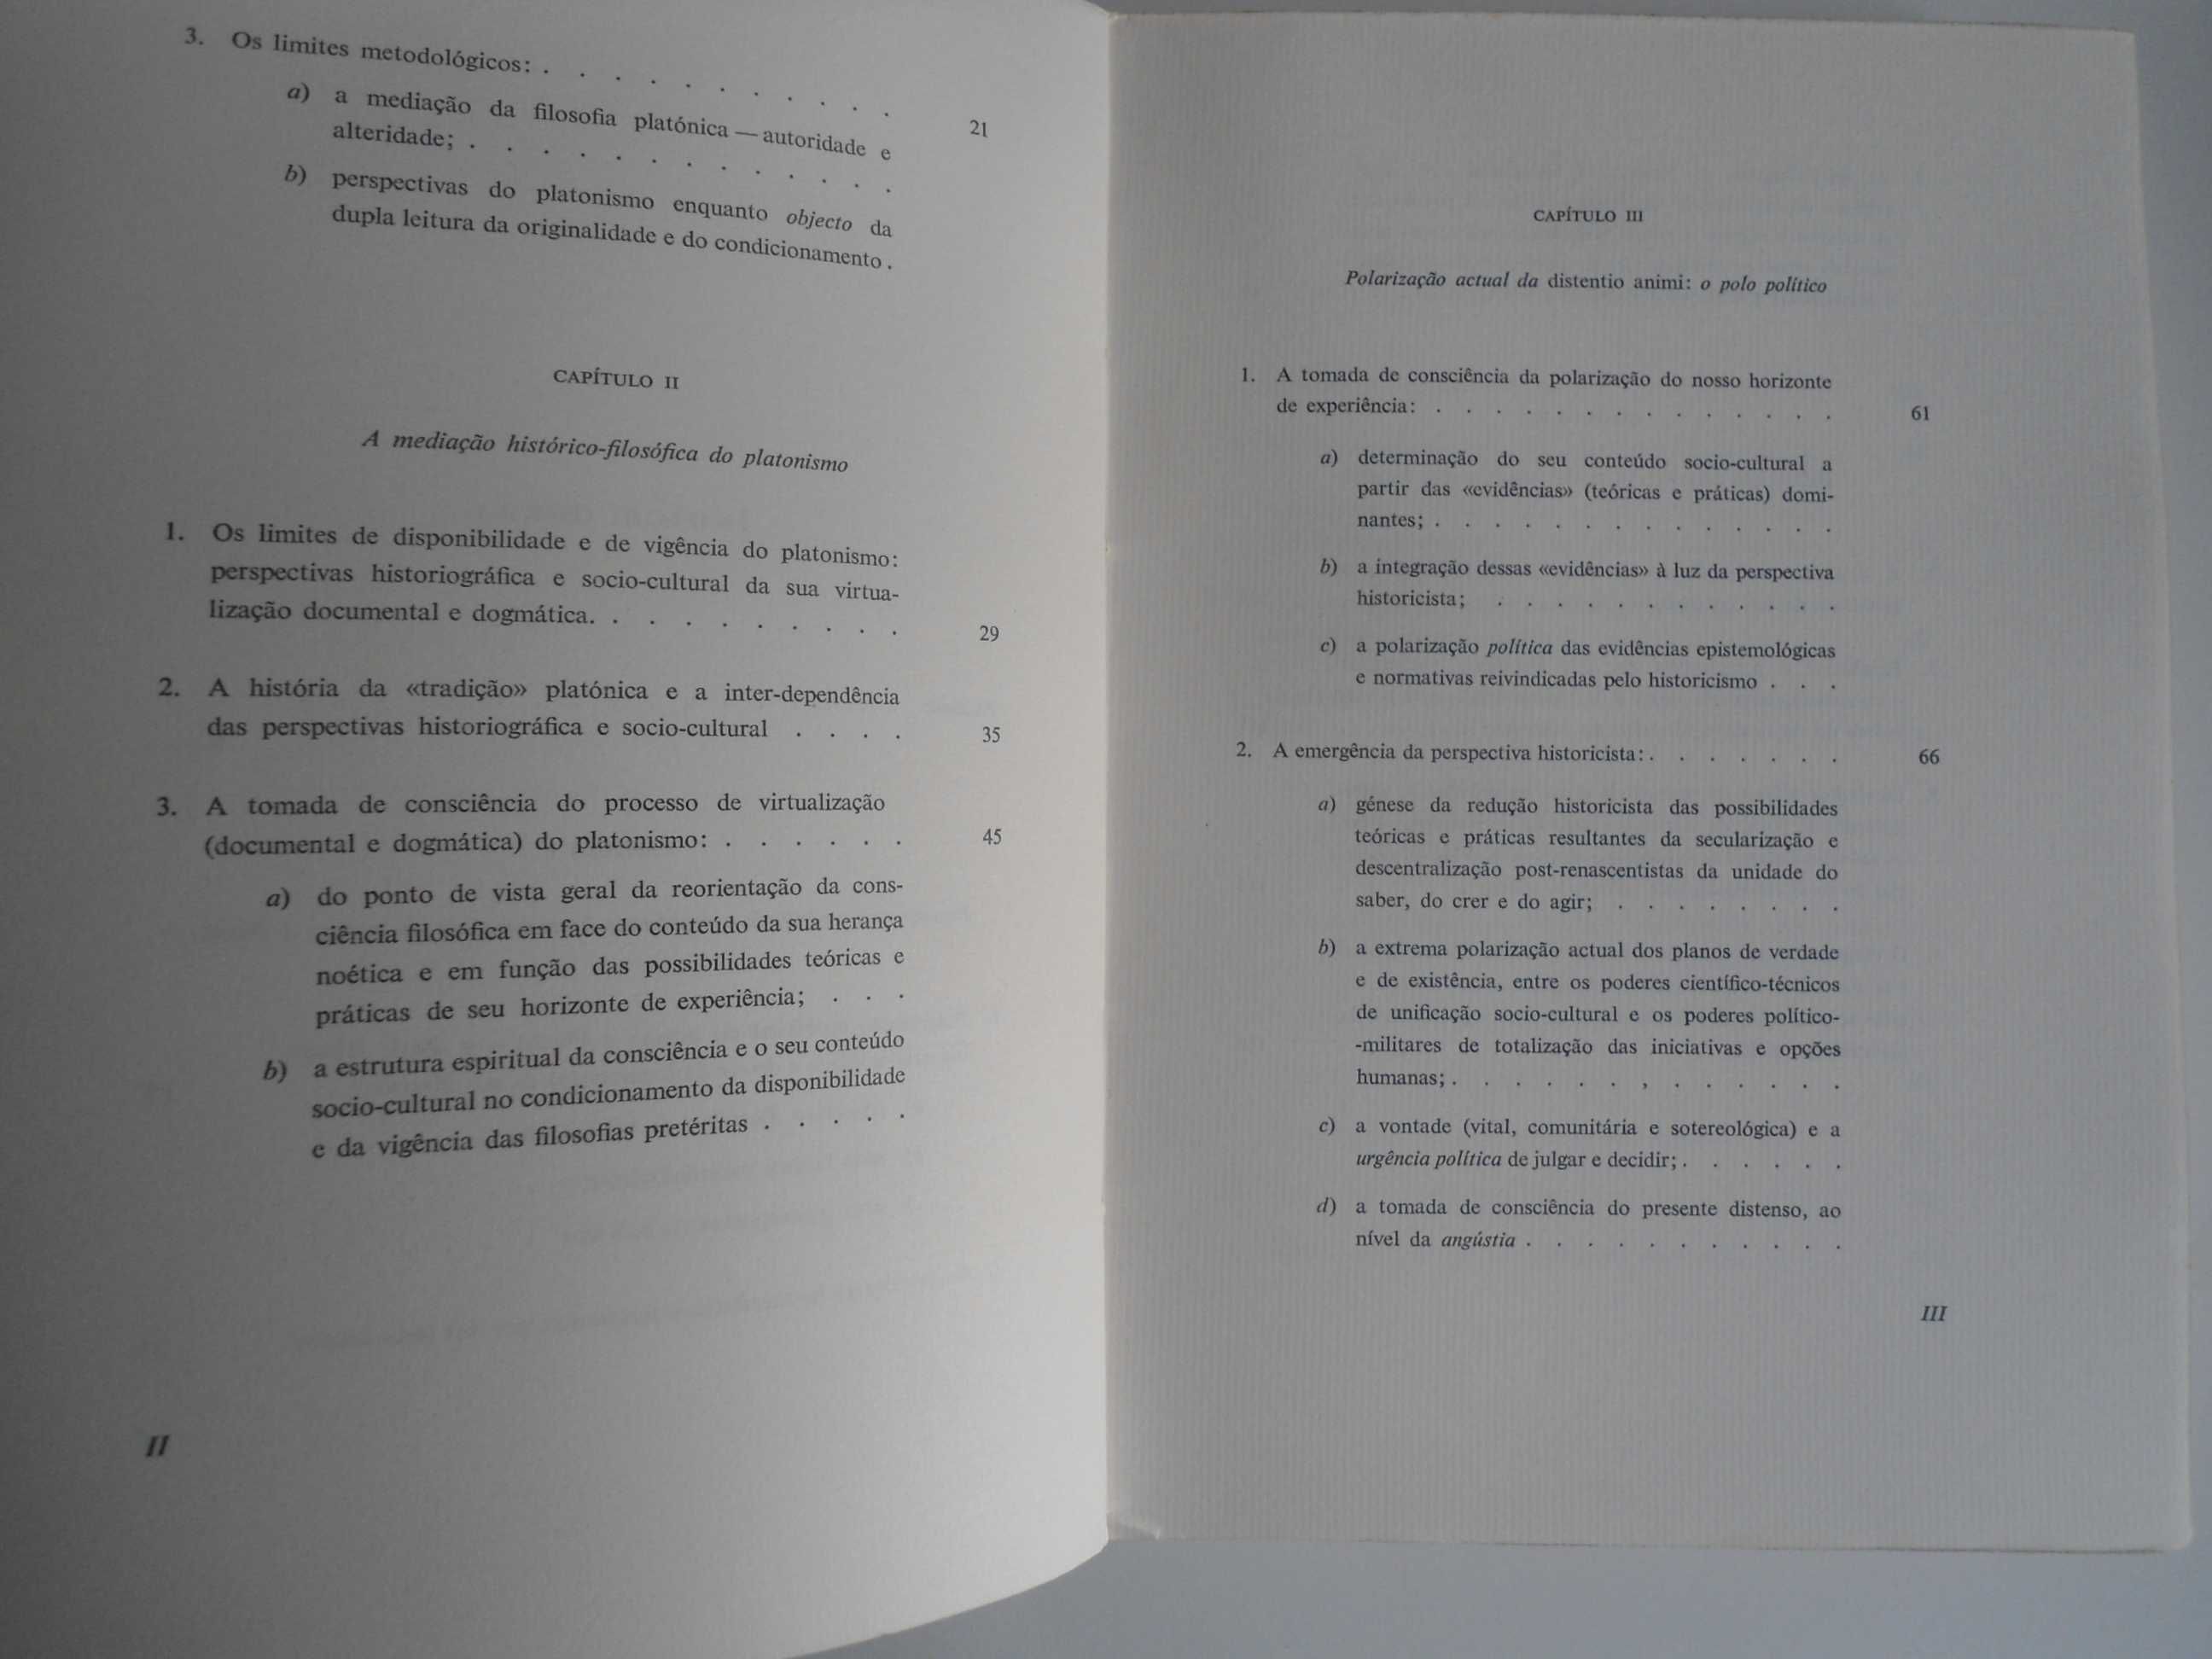 O Acesso à filosofia platónica de Vitor Raul da Costa Matos (1963)